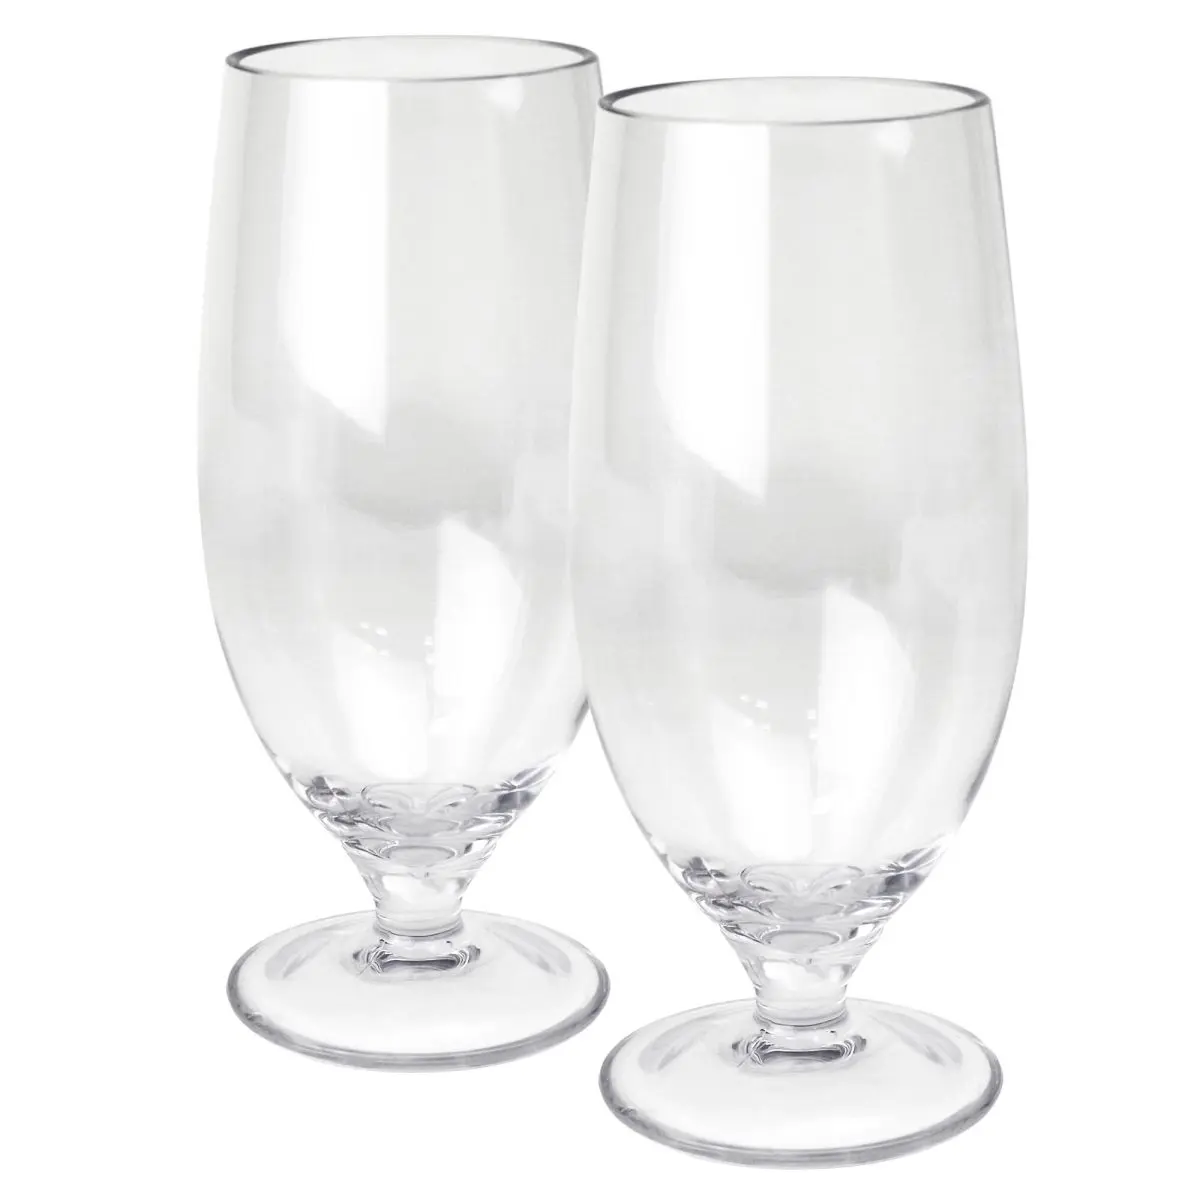 Trinkglser - Pilsglas Tulpe 500 ml, klar, 2er-Set